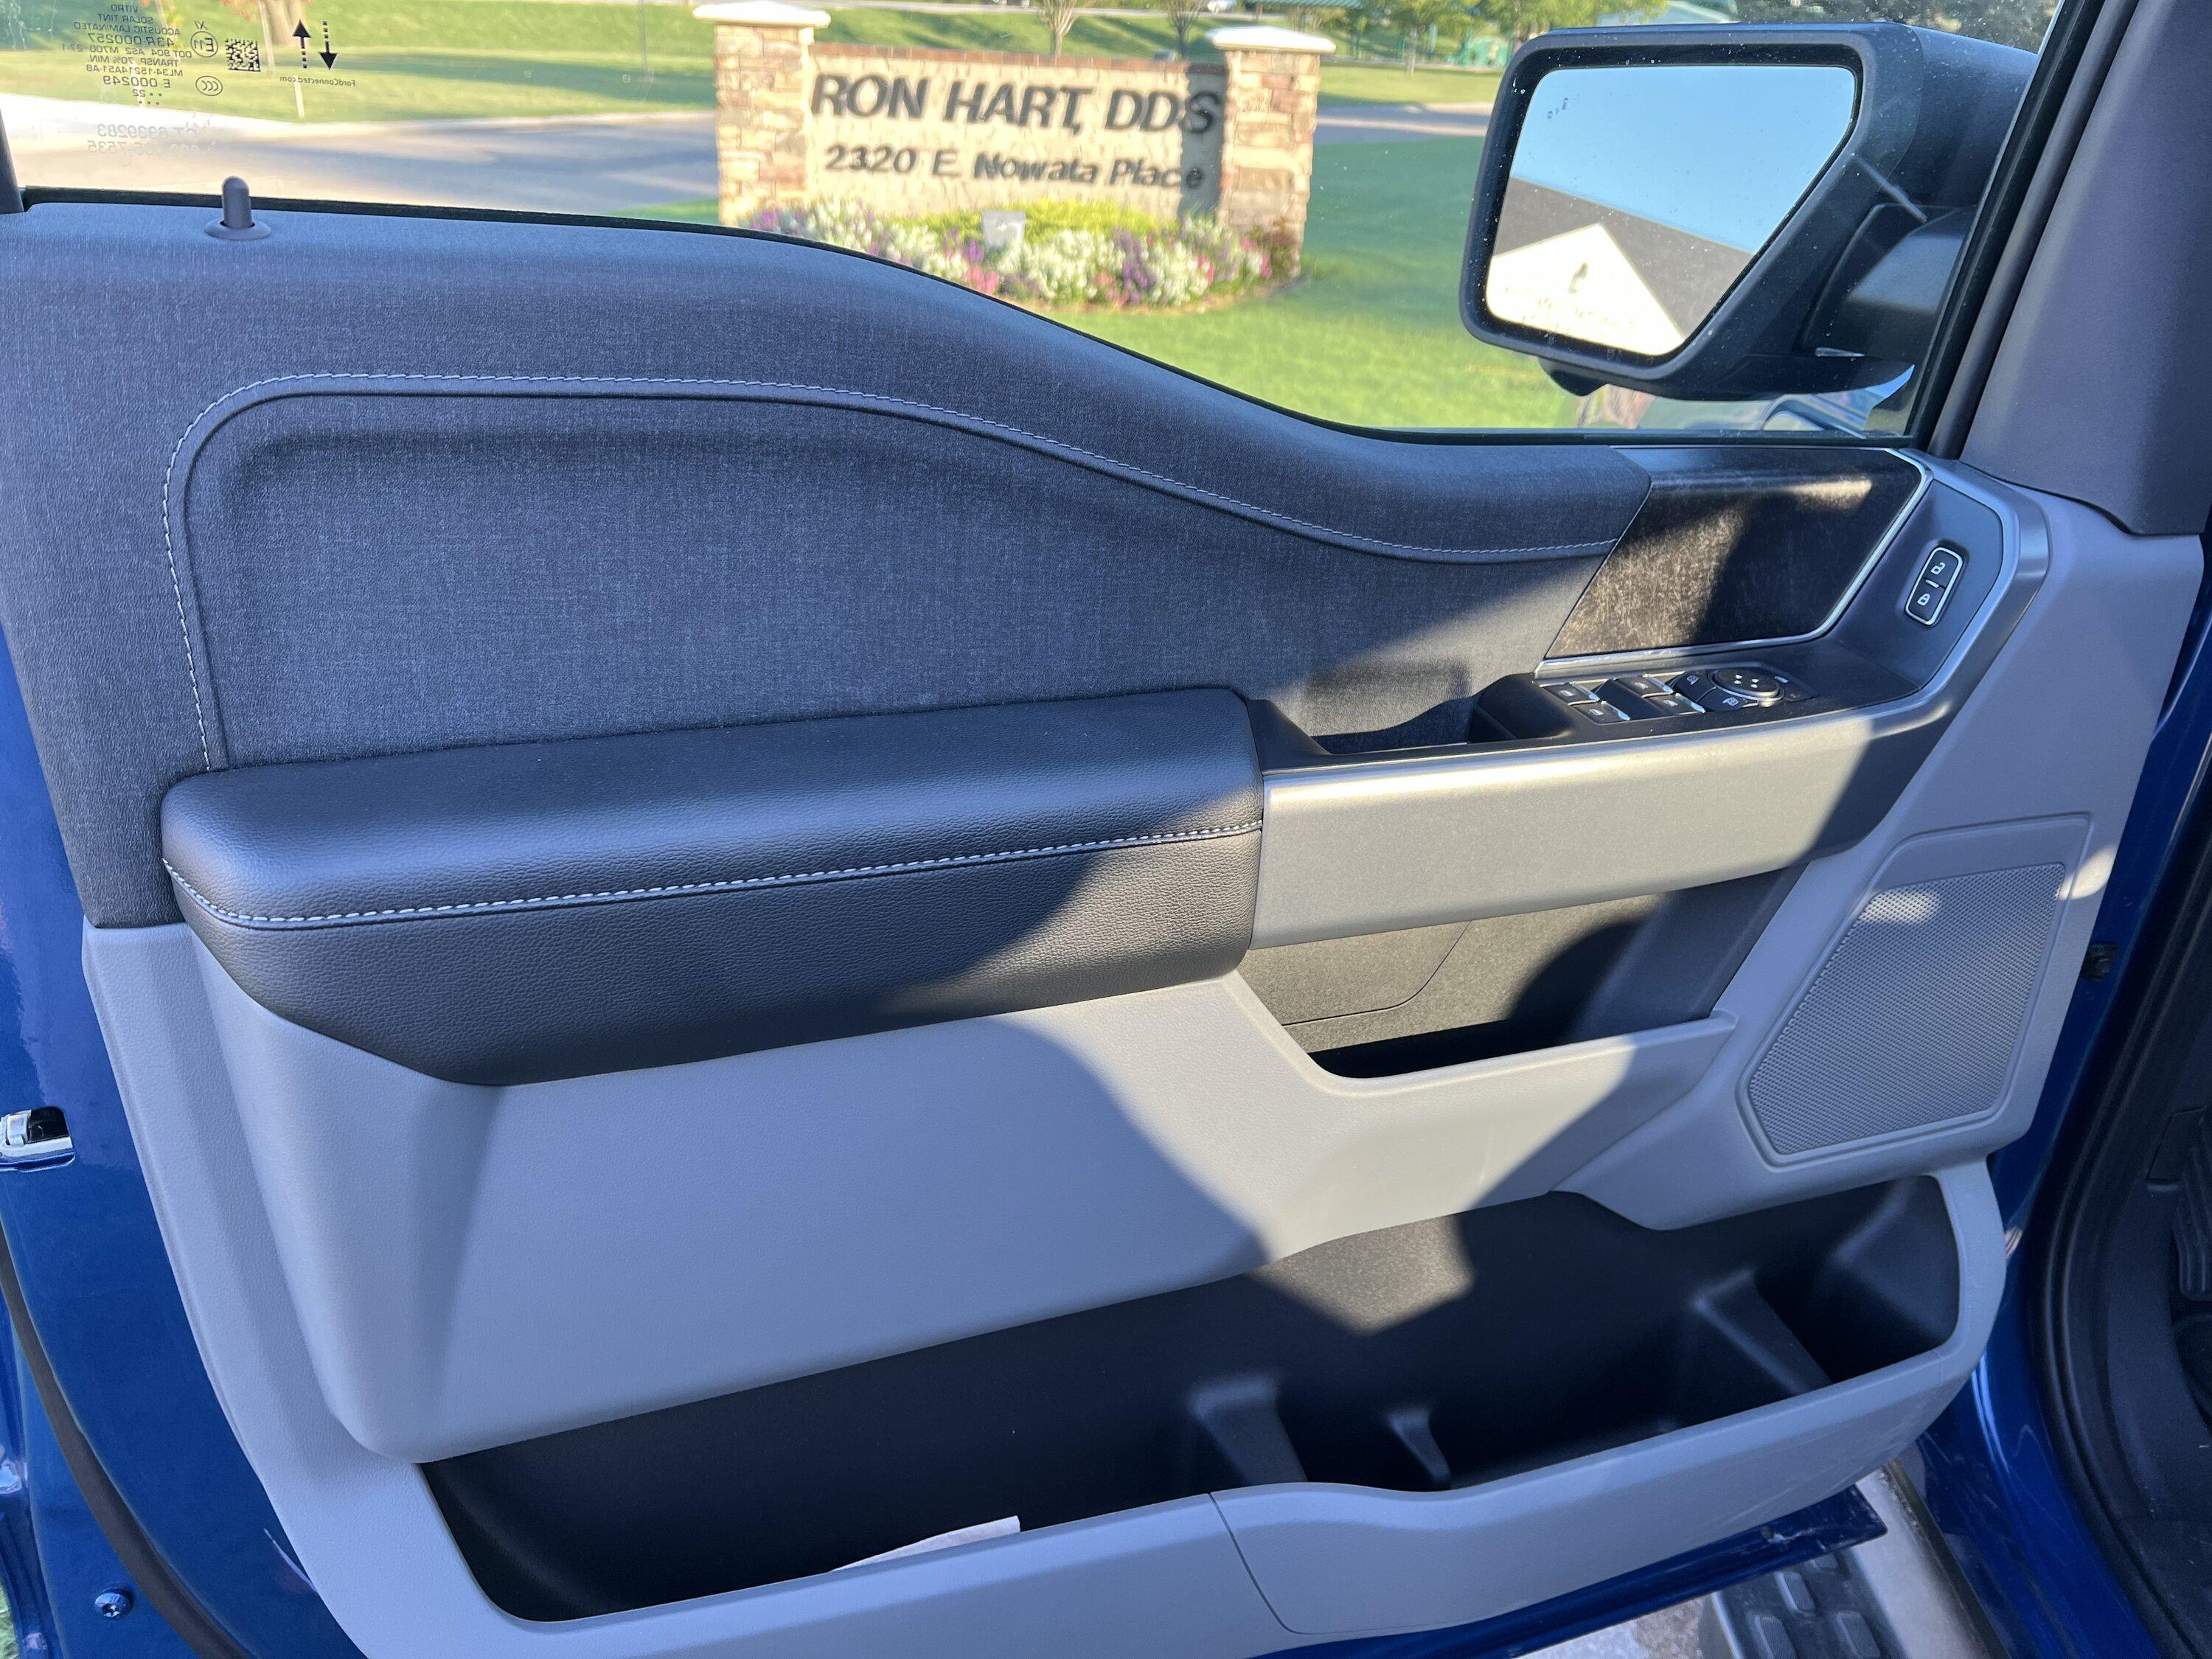 Ford F-150 Lightning Photos of cloth seats? E9EB808F-4A03-454A-9FAF-57453DD1424C